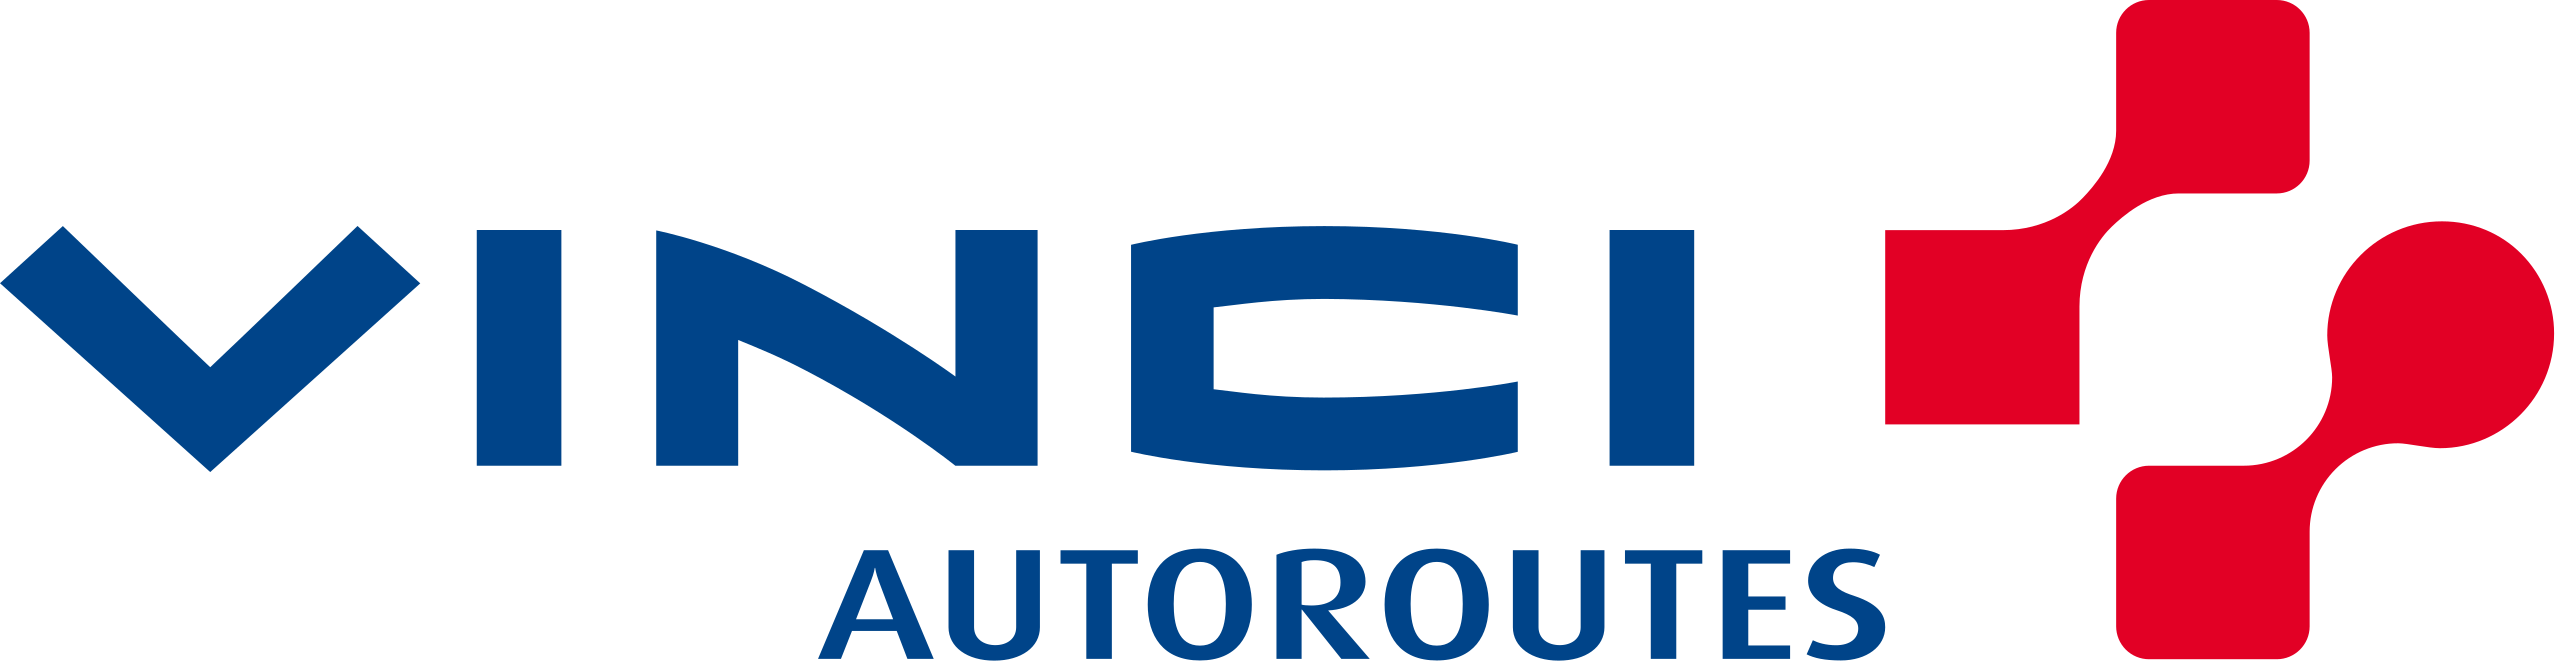 2560px-Logo_Vinci-Autoroutes